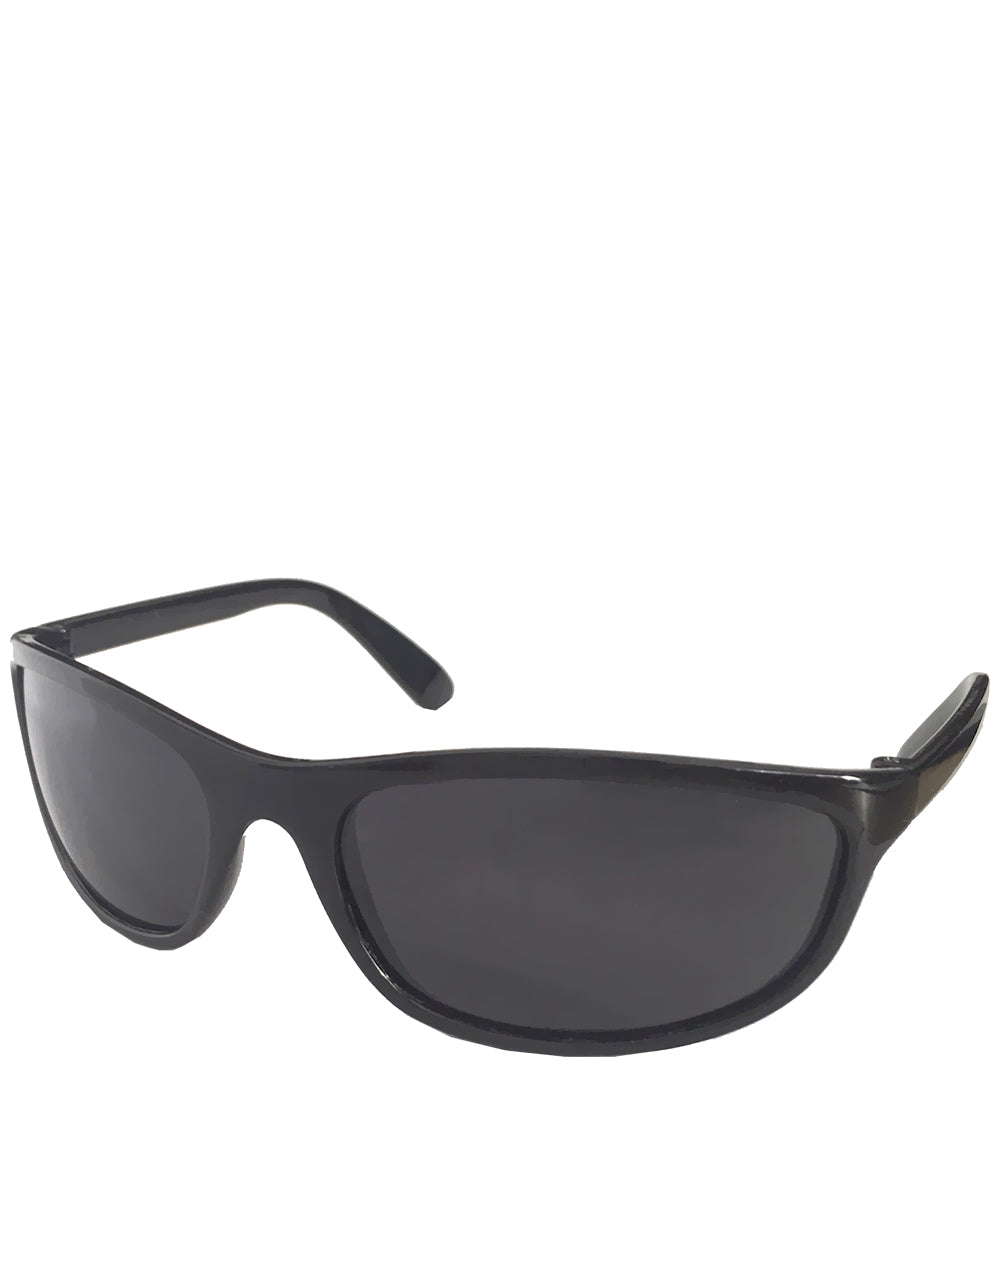 A.Ventura Carrey Style Sunglasses, Black Frame / Smoke Lens